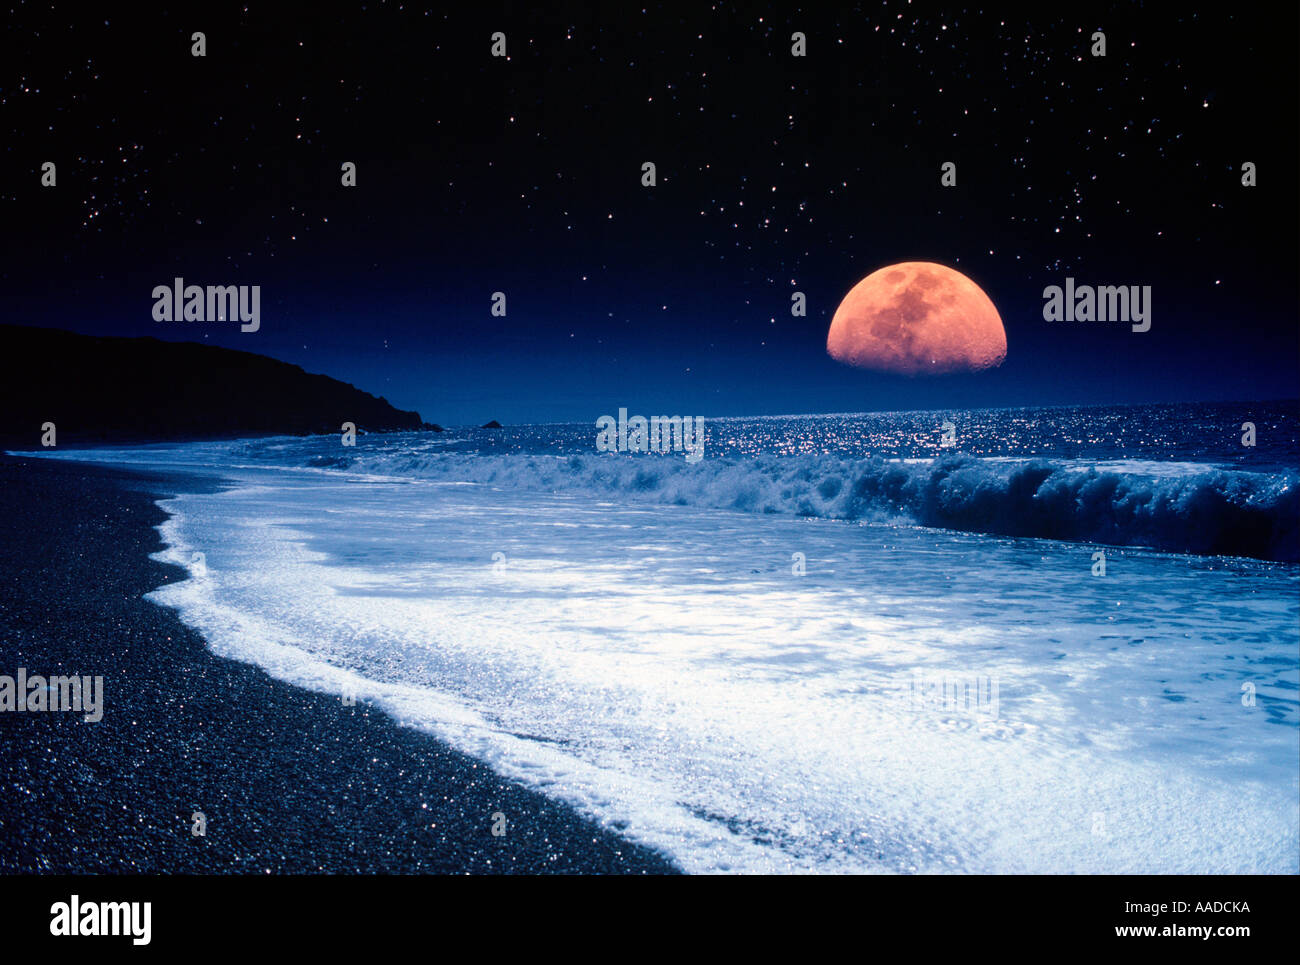 Impresionante,impresionante,grandes,mayores,colosal,gran,gran,enorme,luna,Luna Chale Playa Isla de Wight REINO UNIDO Inglaterra Gran Bretaña Foto de stock